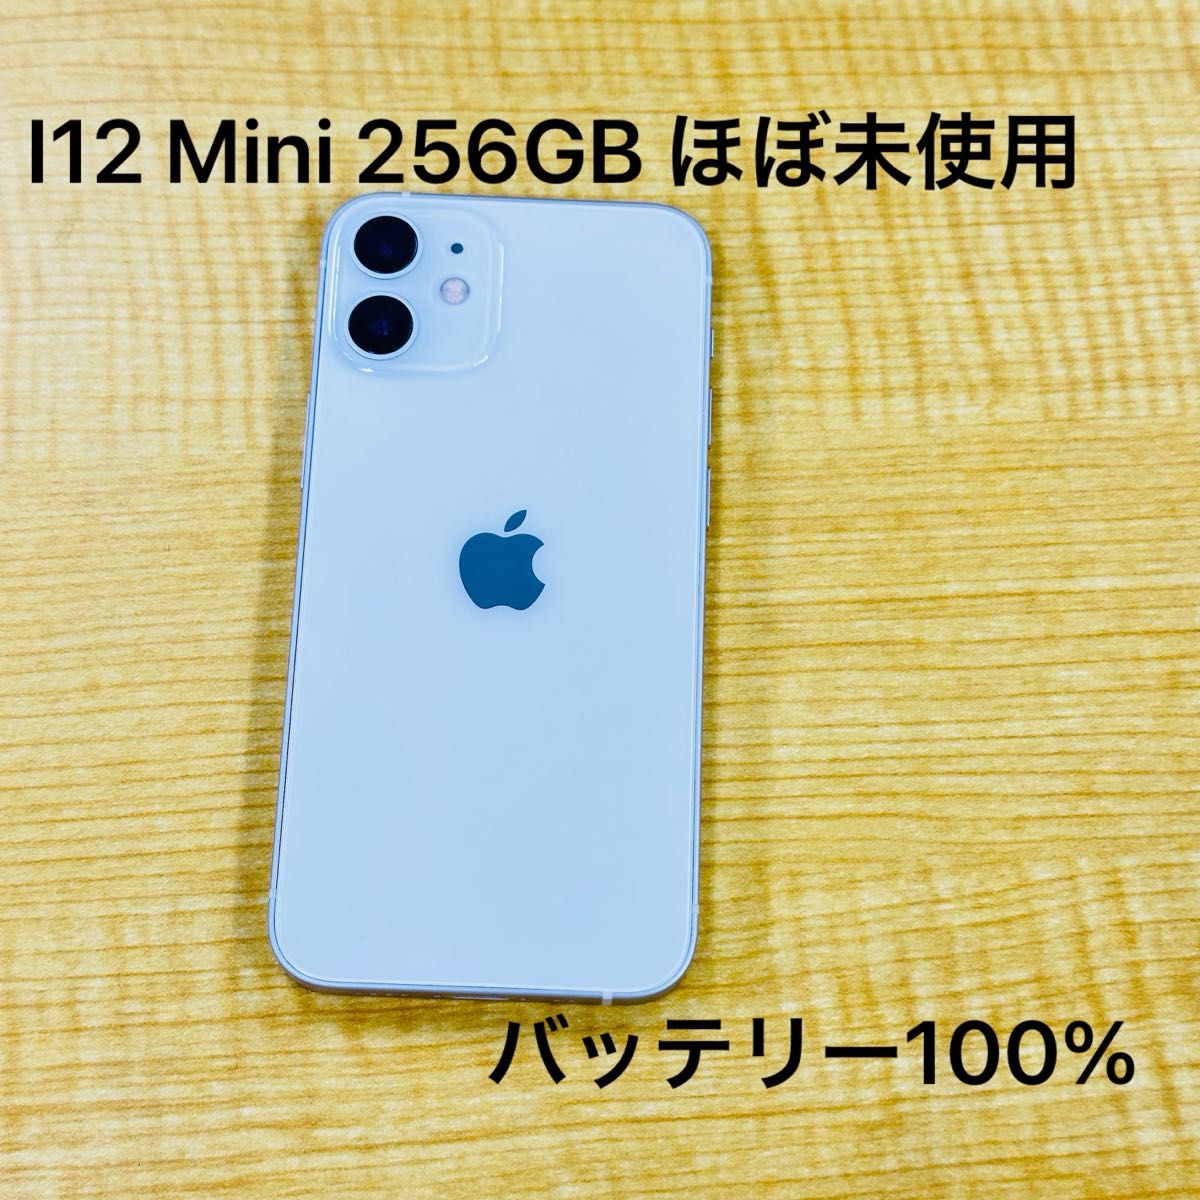 Apple Iphone 12 Mini 256GB ホワイト バッテリー100% SIM フリー ほぼ未使用